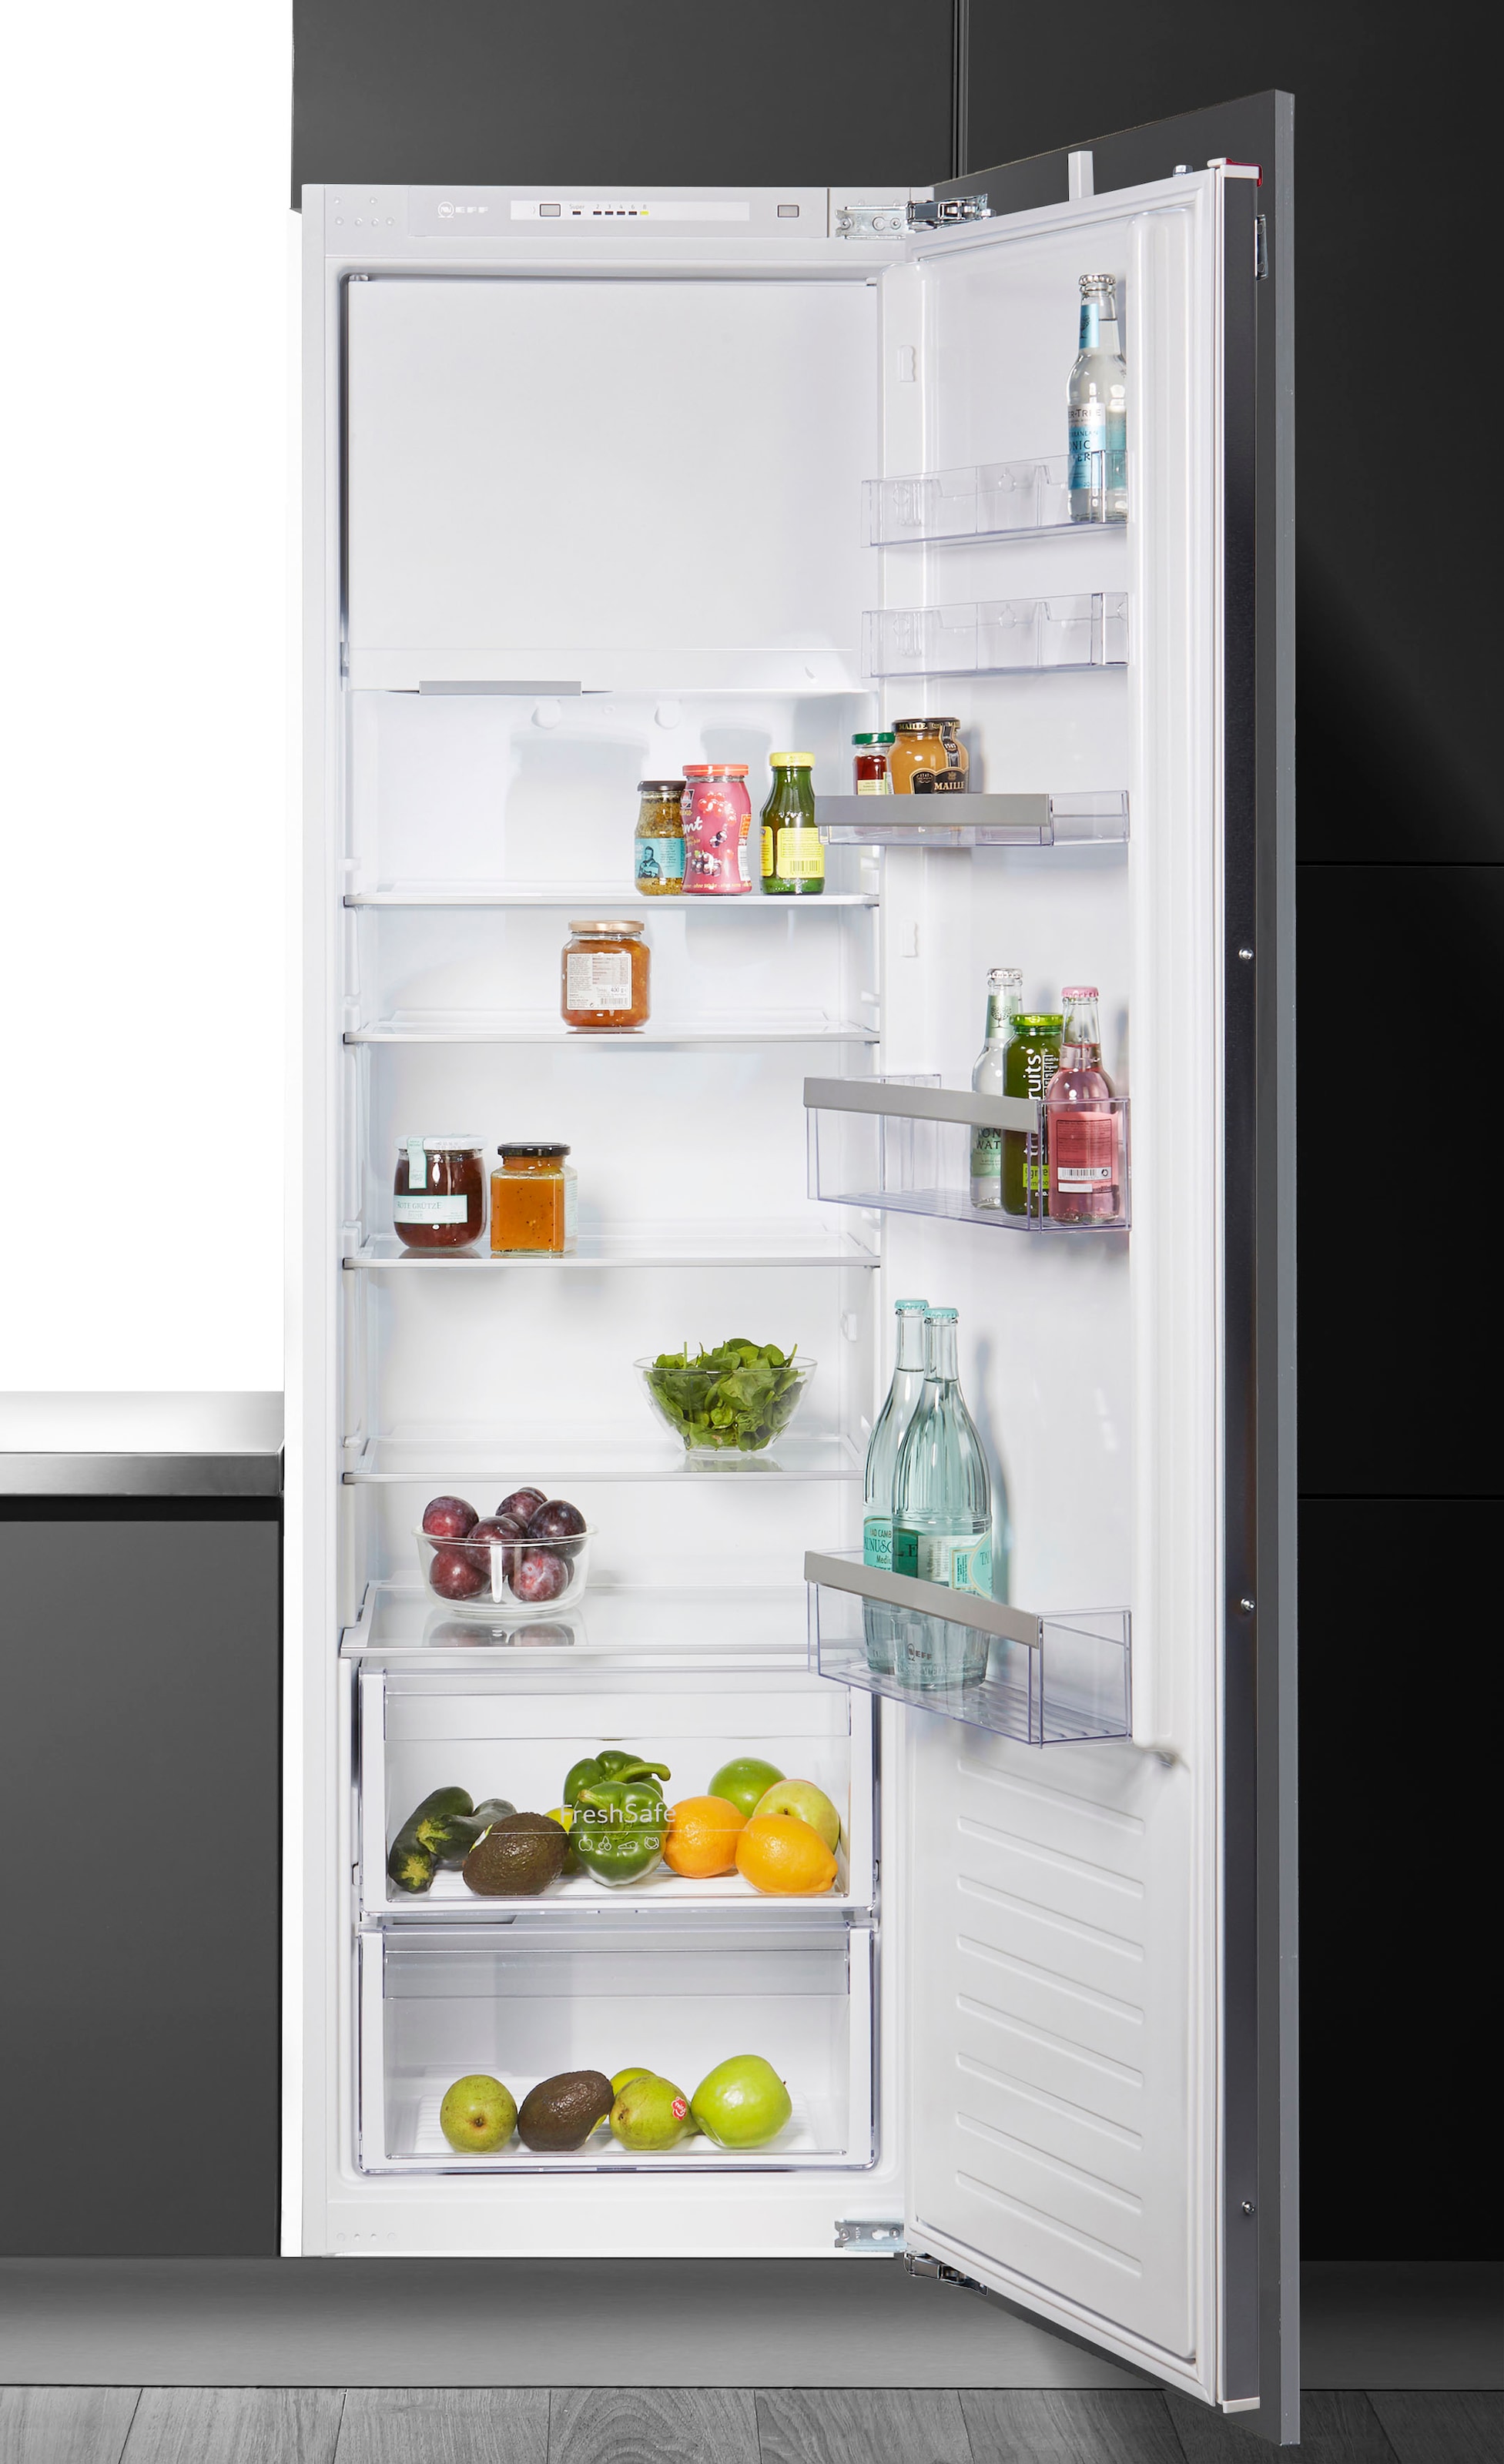 NEFF Einbaukühlschrank »KI2822FF0«, KI2822FF0, 177,2 cm hoch, 54,1 cm breit, Fresh Safe: Schublade für flexible Lagerung von Obst & Gemüse